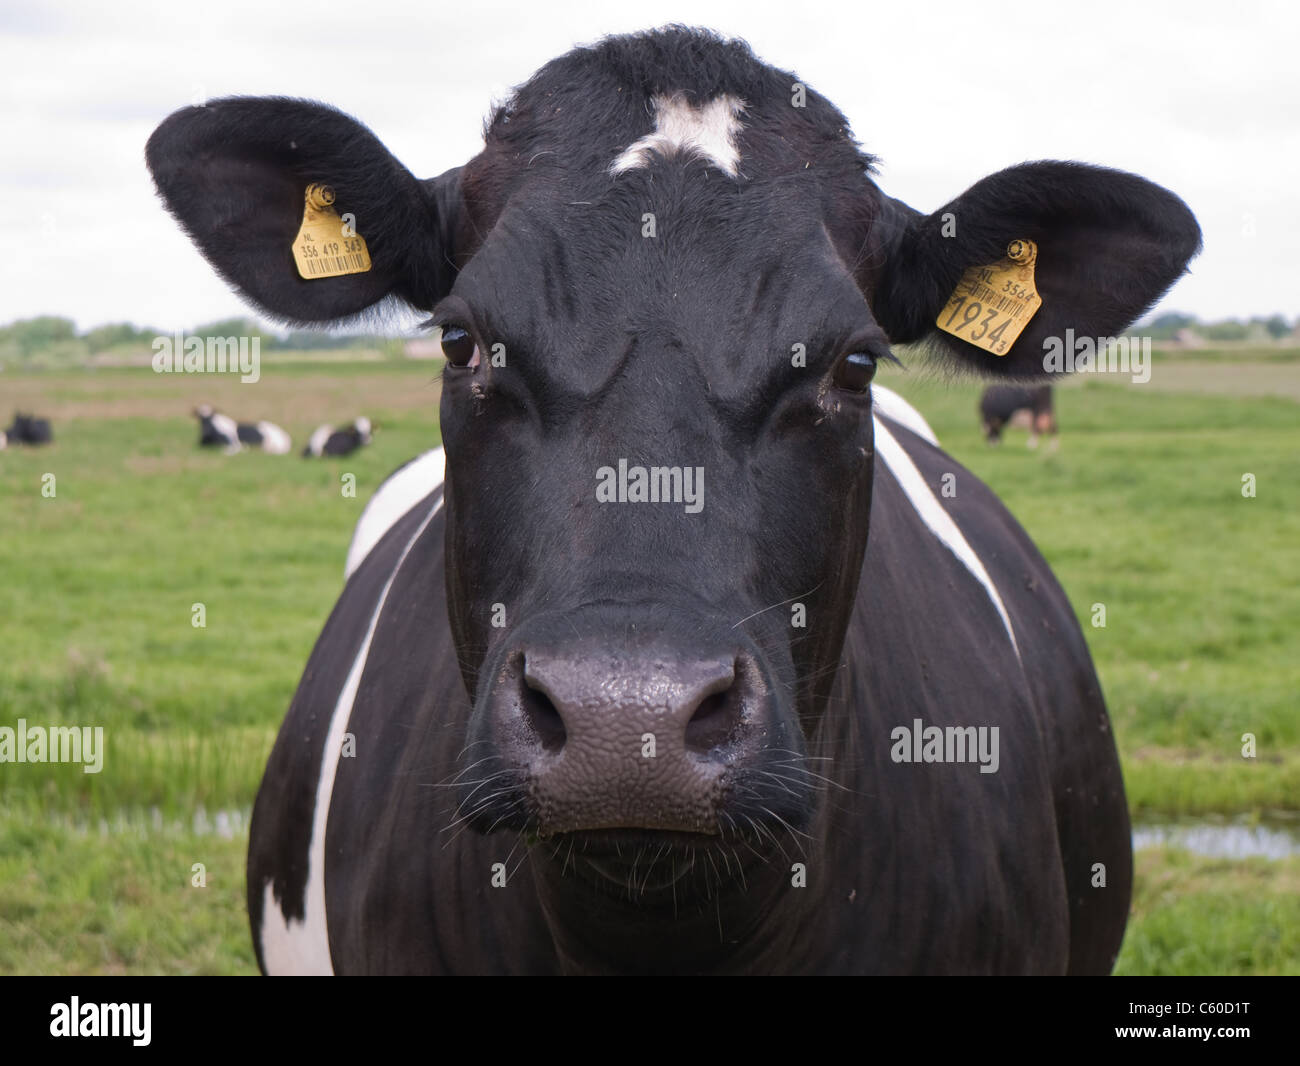 Kuh mit Ohrmarkierungen, die in die Kamera schauen. Vorderansicht mit verschwommener Landschaft mit anderen Kühen Stockfoto